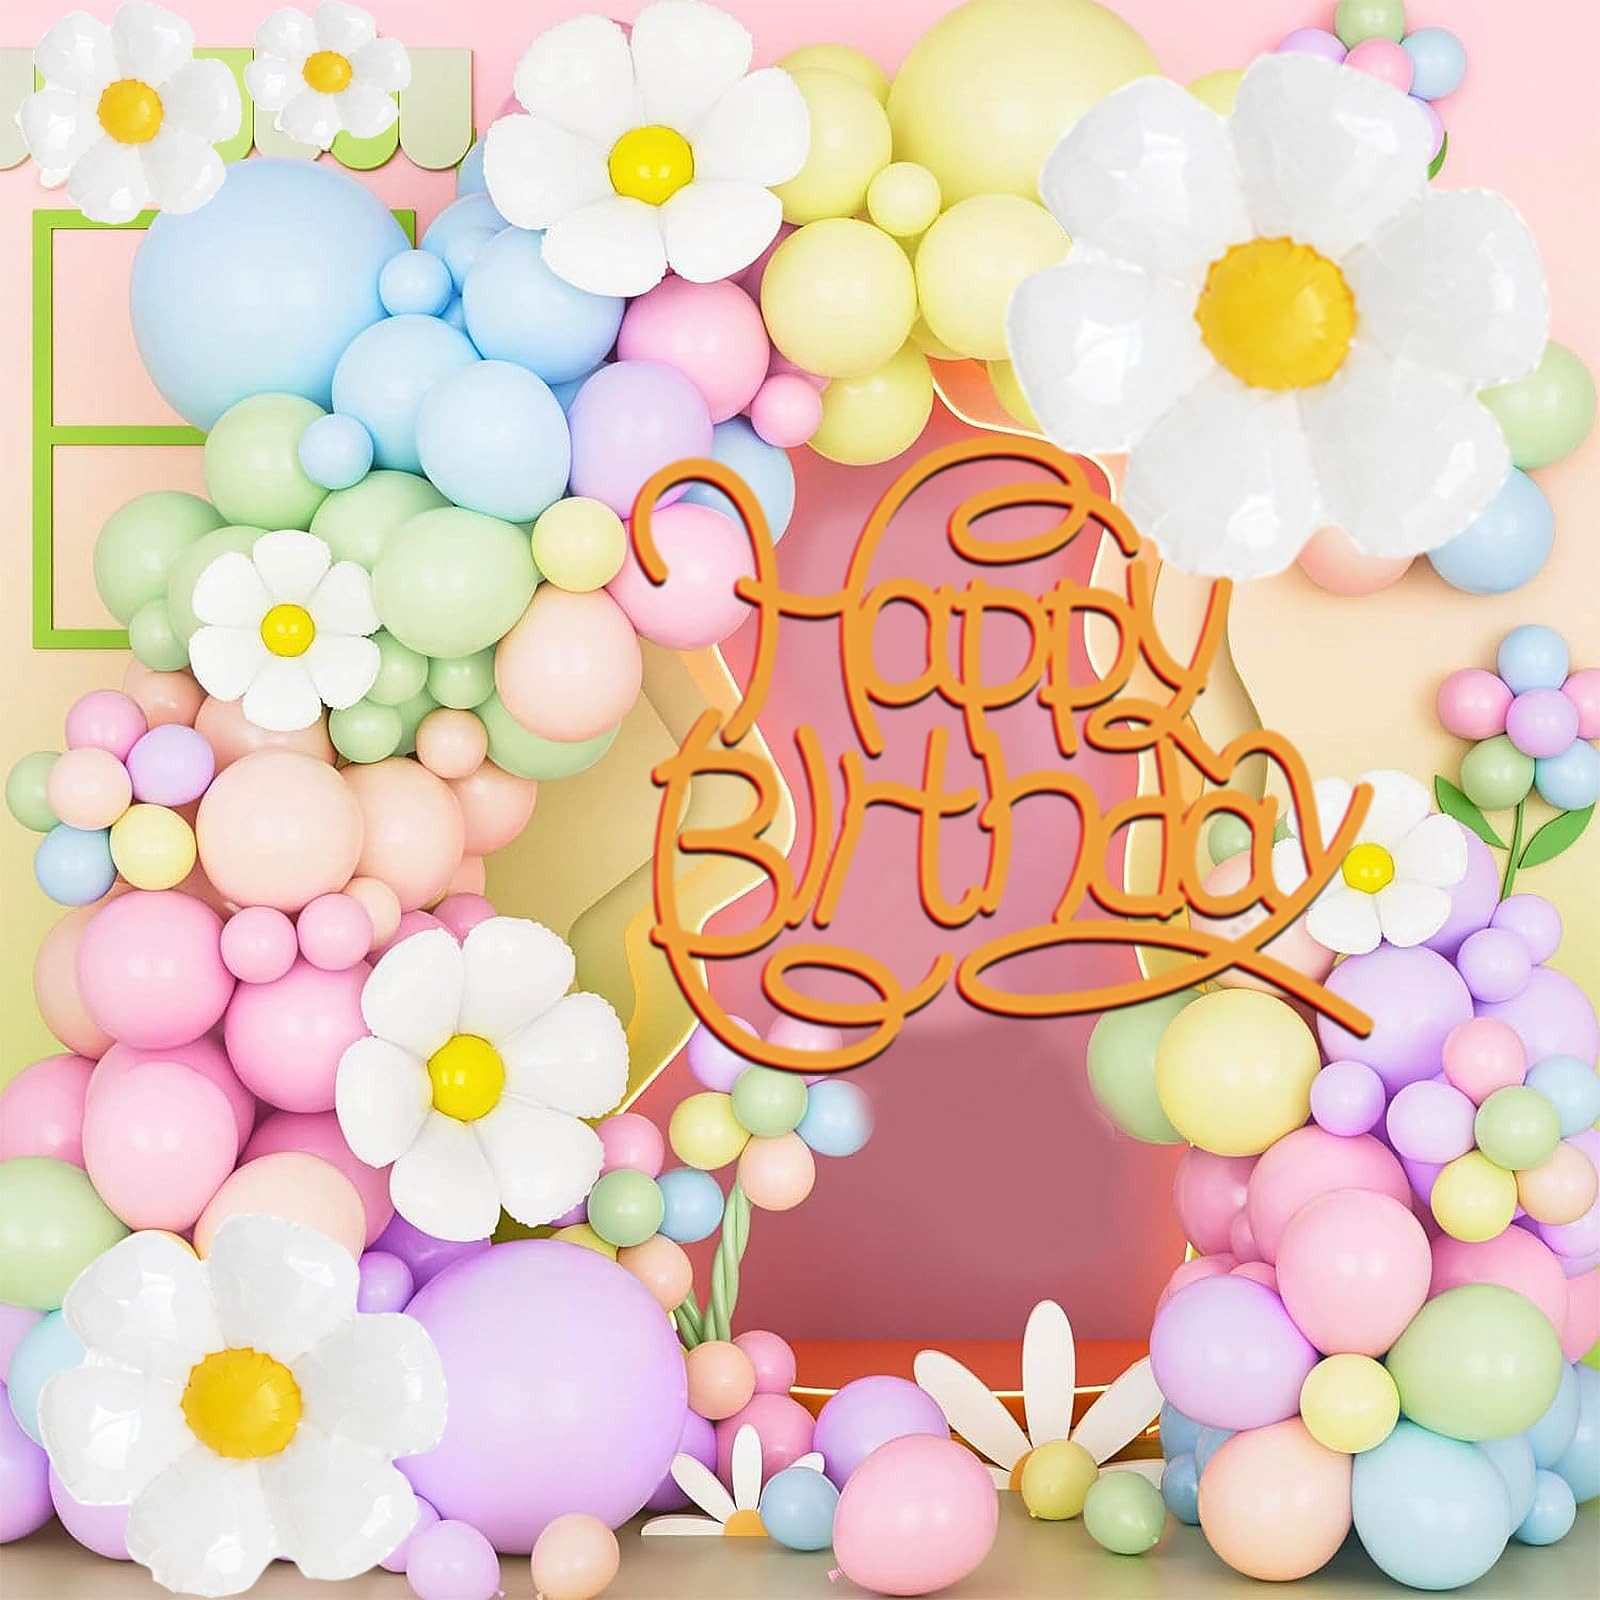 Cbei Luftballon Daisy 144-teiliges Ballon-Set für Geburtstagspartys,Heiratsanträge